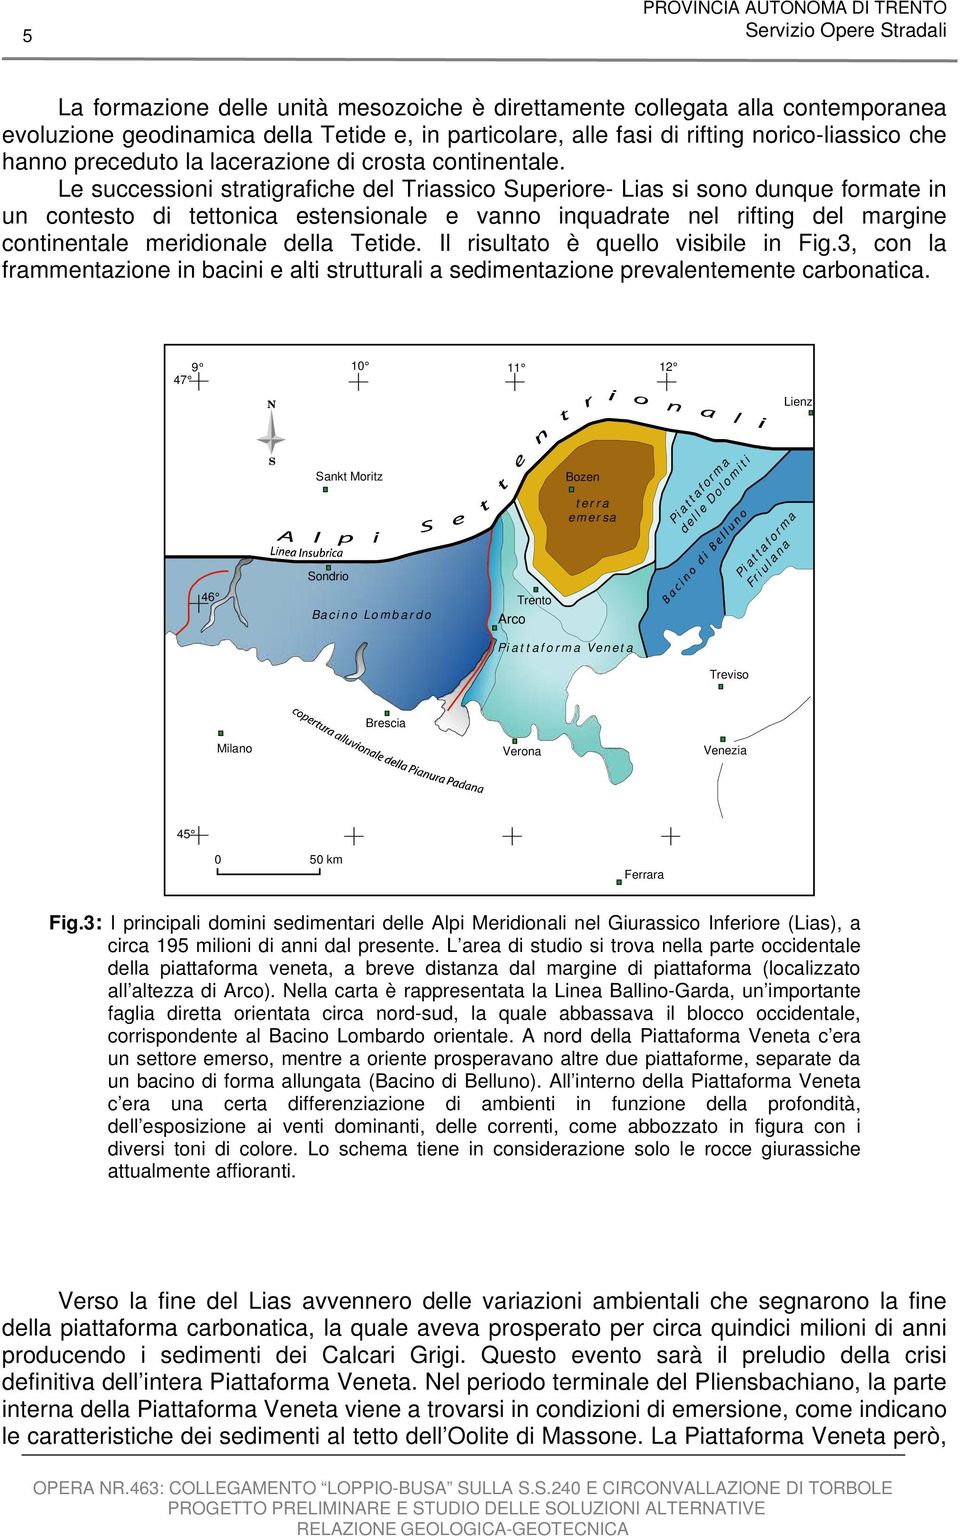 Le successioni stratigrafiche del Triassico Superiore- Lias si sono dunque formate in un contesto di tettonica estensionale e vanno inquadrate nel rifting del margine continentale meridionale della